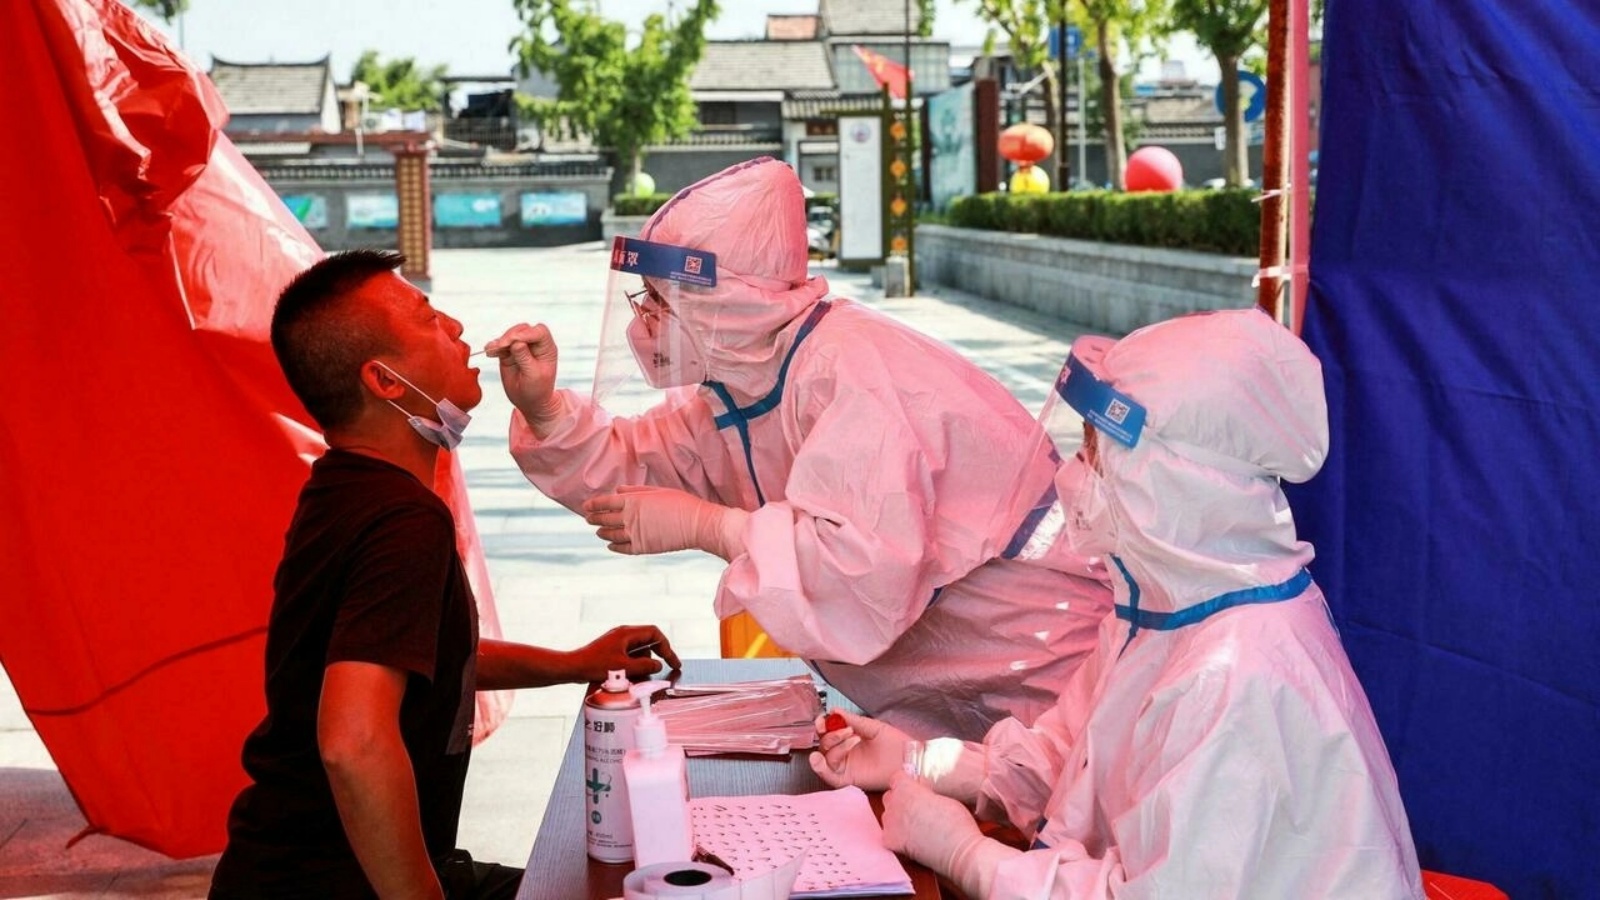 رجل يتلقى اختبار الحمض النووي لفيروس كورونا كوفيد-19 في هوايان بمقاطعة جيانغسو بشرق الصين، حيث تسابق الصين لاحتواء أسوأ تفشّي لفيروس كورونا منذ شهور. في 30 تموز/يوليو 2021.